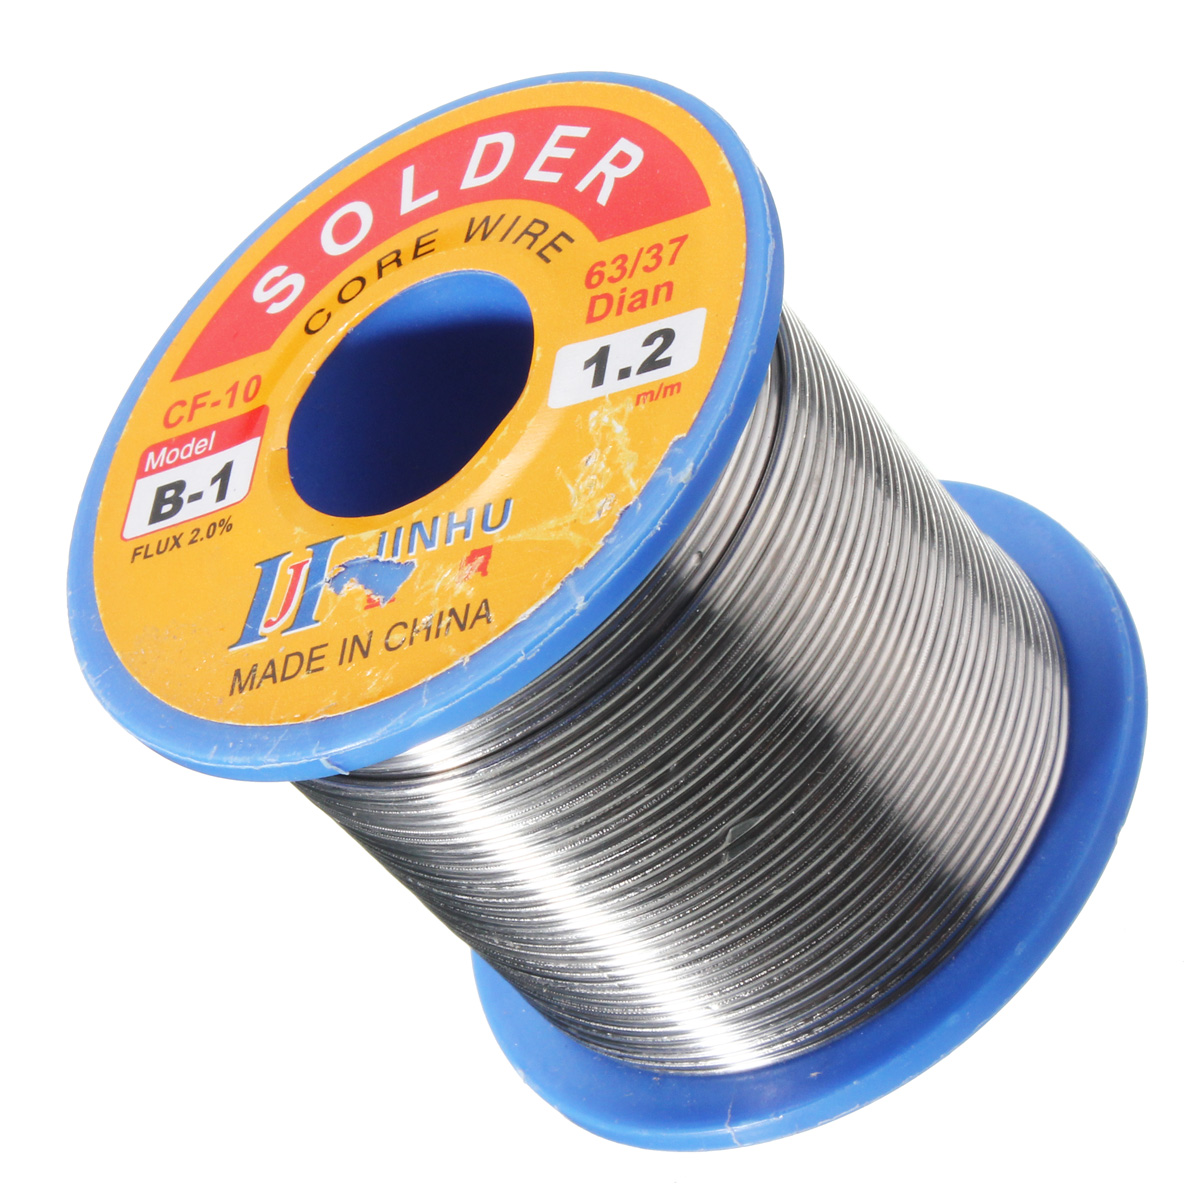 

300g 1.2mm Reel Roll Welding Wire Welding Solder Wire 63/37 Tin Lead 1.2% Flux